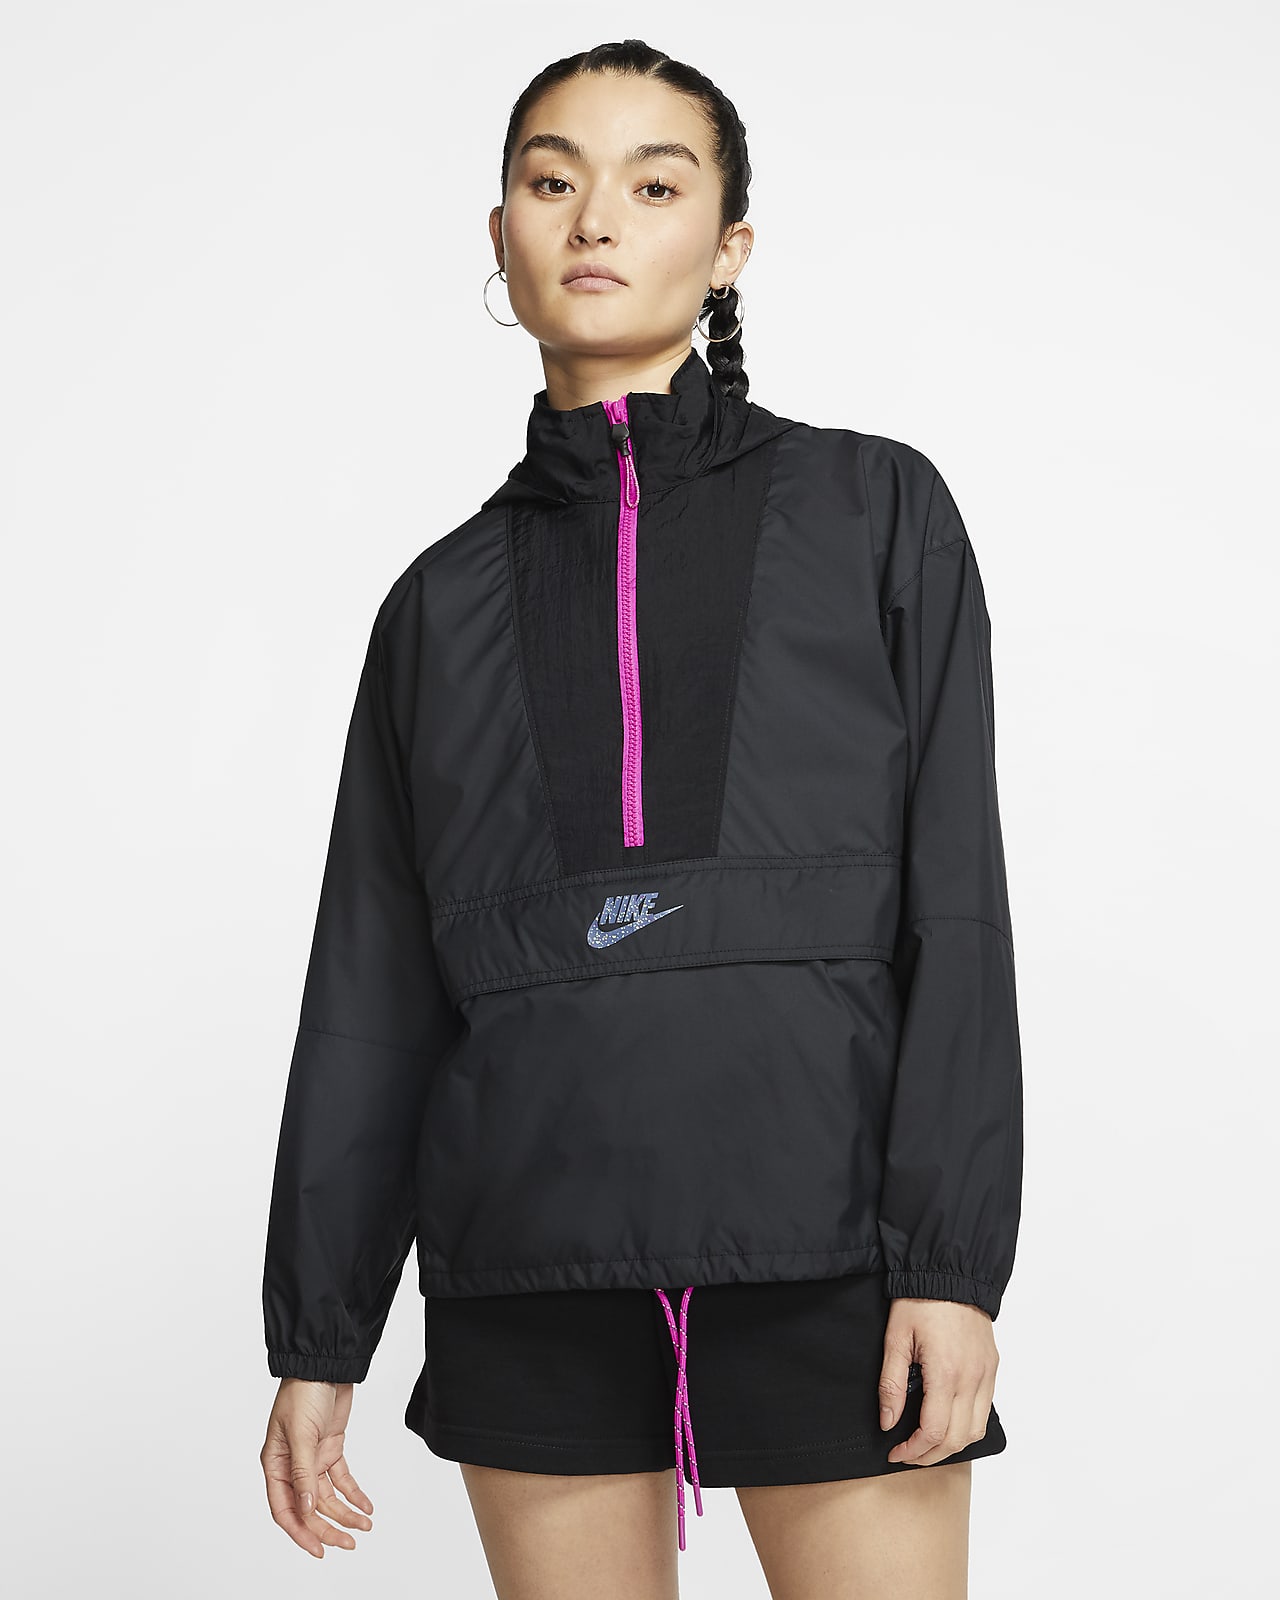 Nike Sportswear Women's Jacket. Nike SG